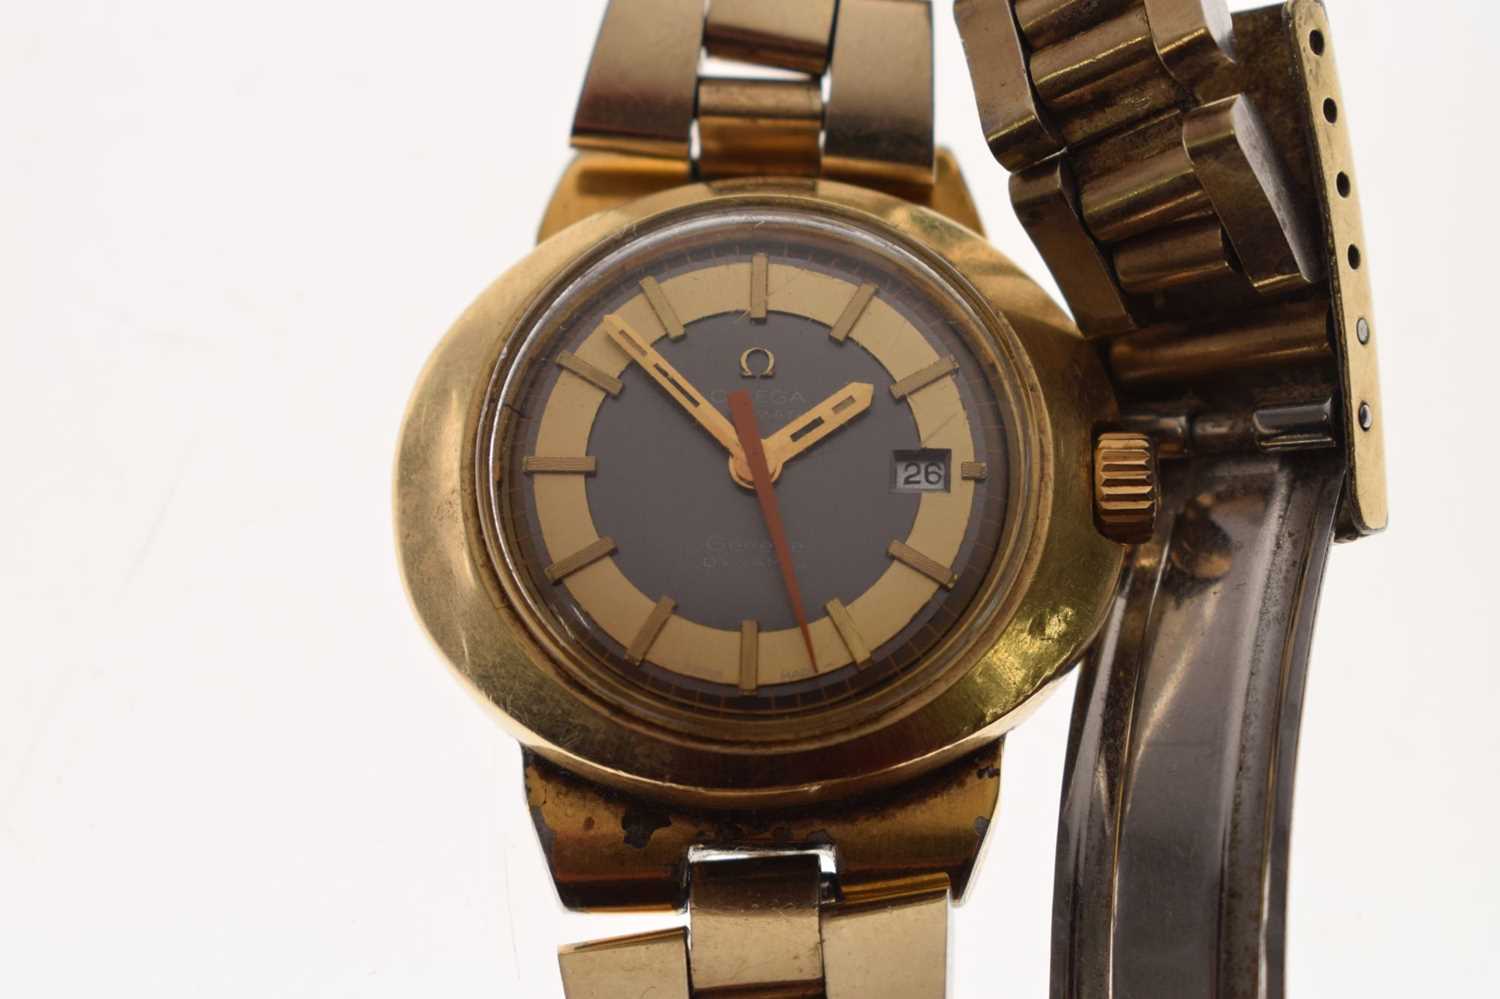 Omega - Lady's circa 1970s Genève 'Dynamic' bracelet watch - Image 3 of 11